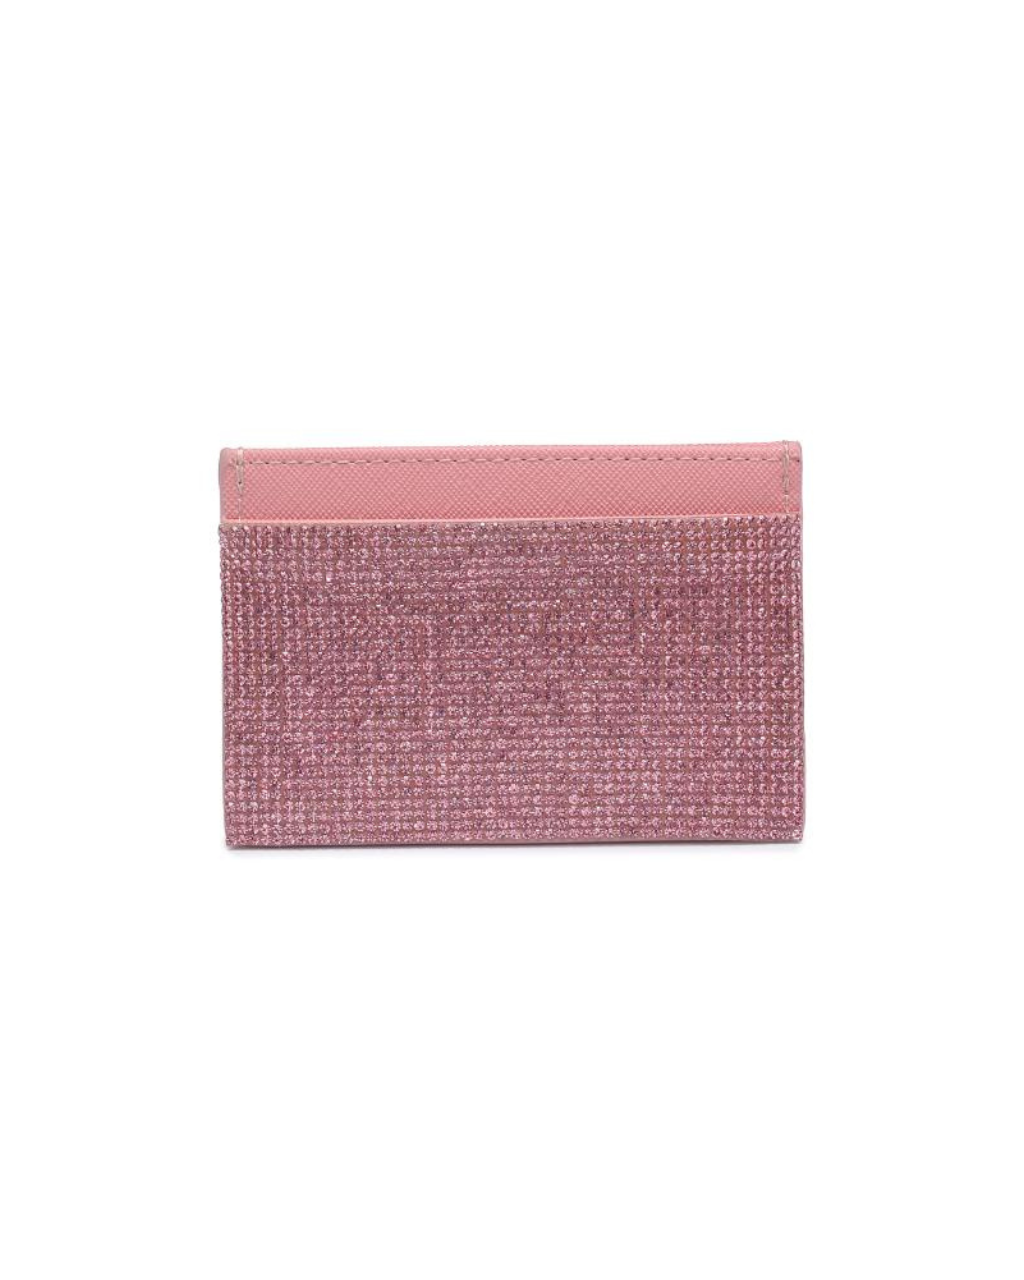 Gigi Cardholder Pink, Evening Bag by Urban Expressions | LIT Boutique